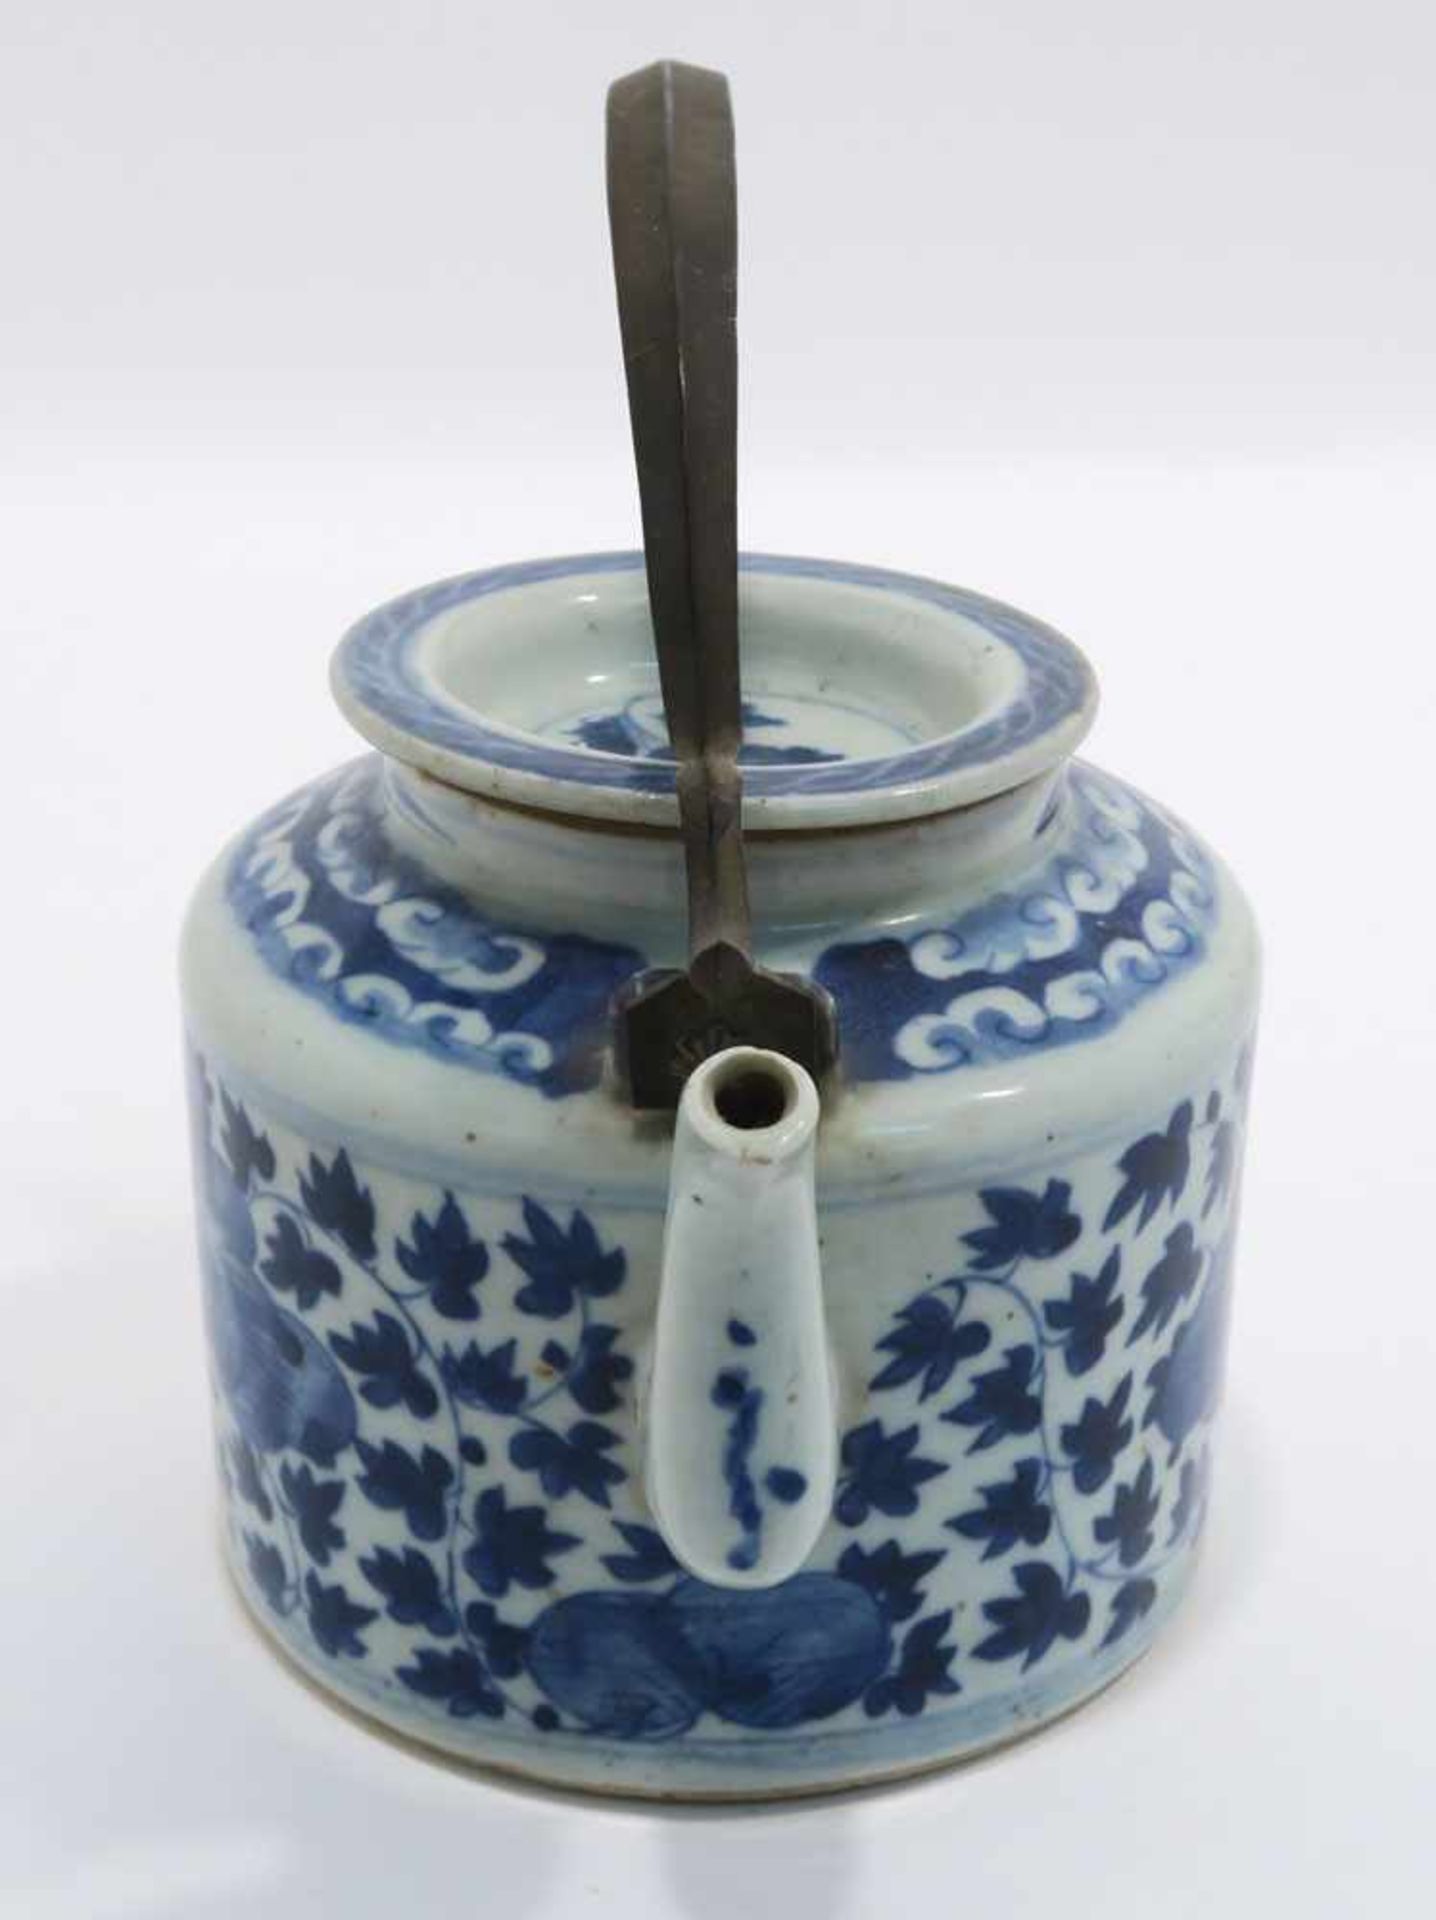 Zwei TeekannenChina. Porzellan. Floraler bzw. figürlicher Blaudekor. Metallhenkel. H. 11,5 cm bzw. - Bild 6 aus 15